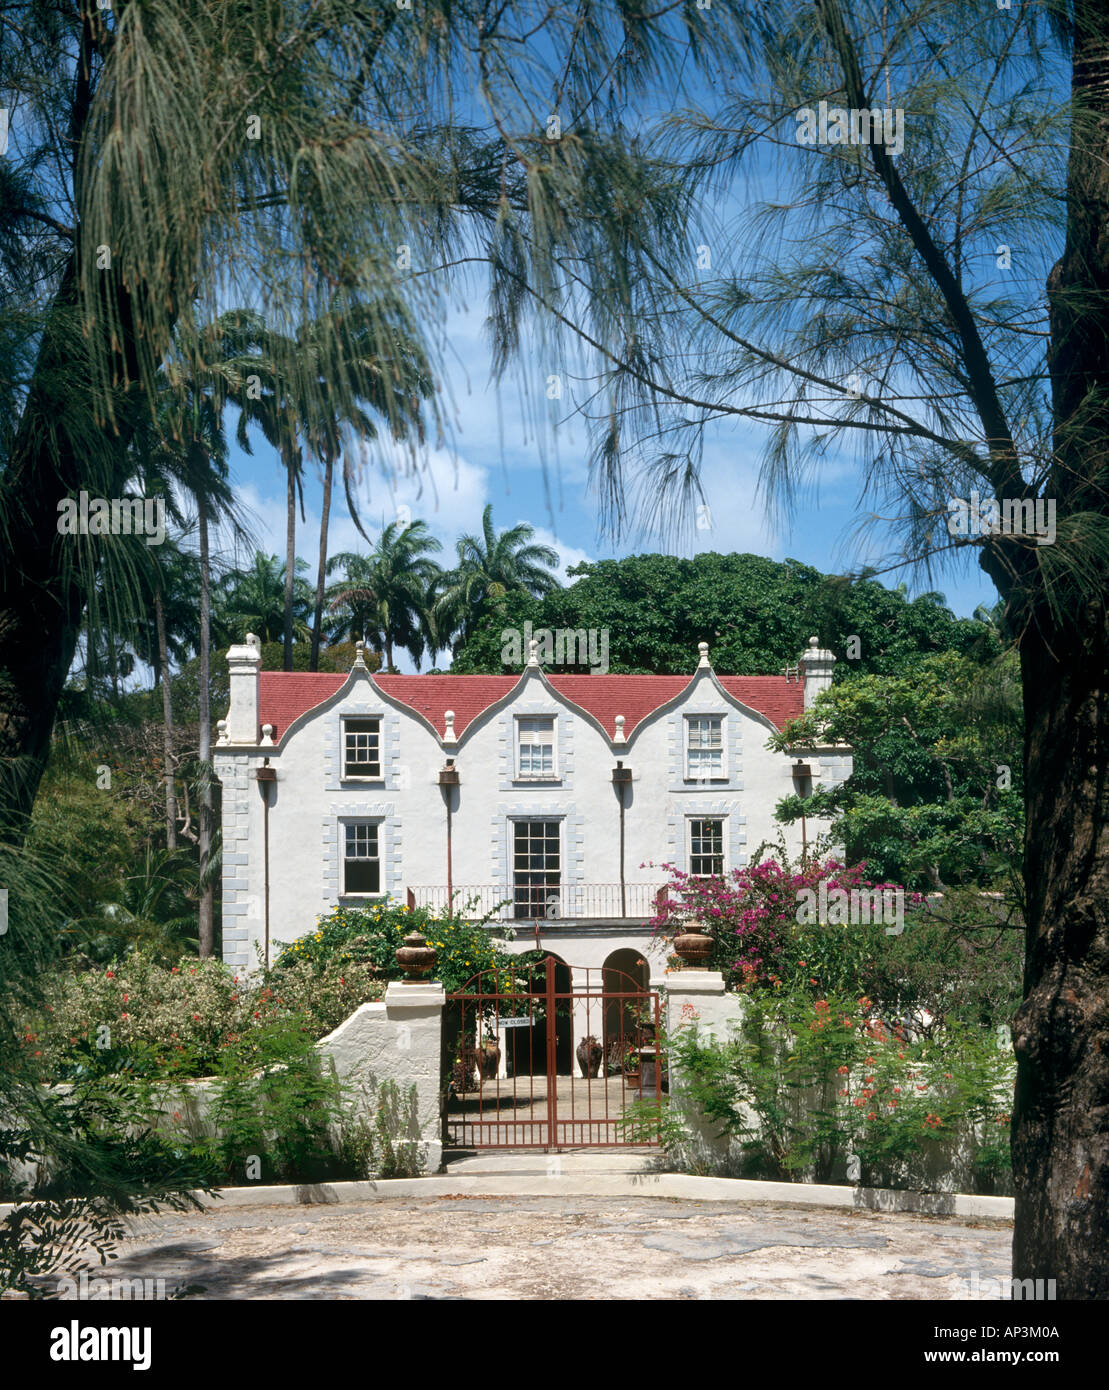 St Nicholas Abbey Jacobean manoir construit en 1650, paroisse saint Pierre, de la Barbade, Antilles, Caraïbes Banque D'Images